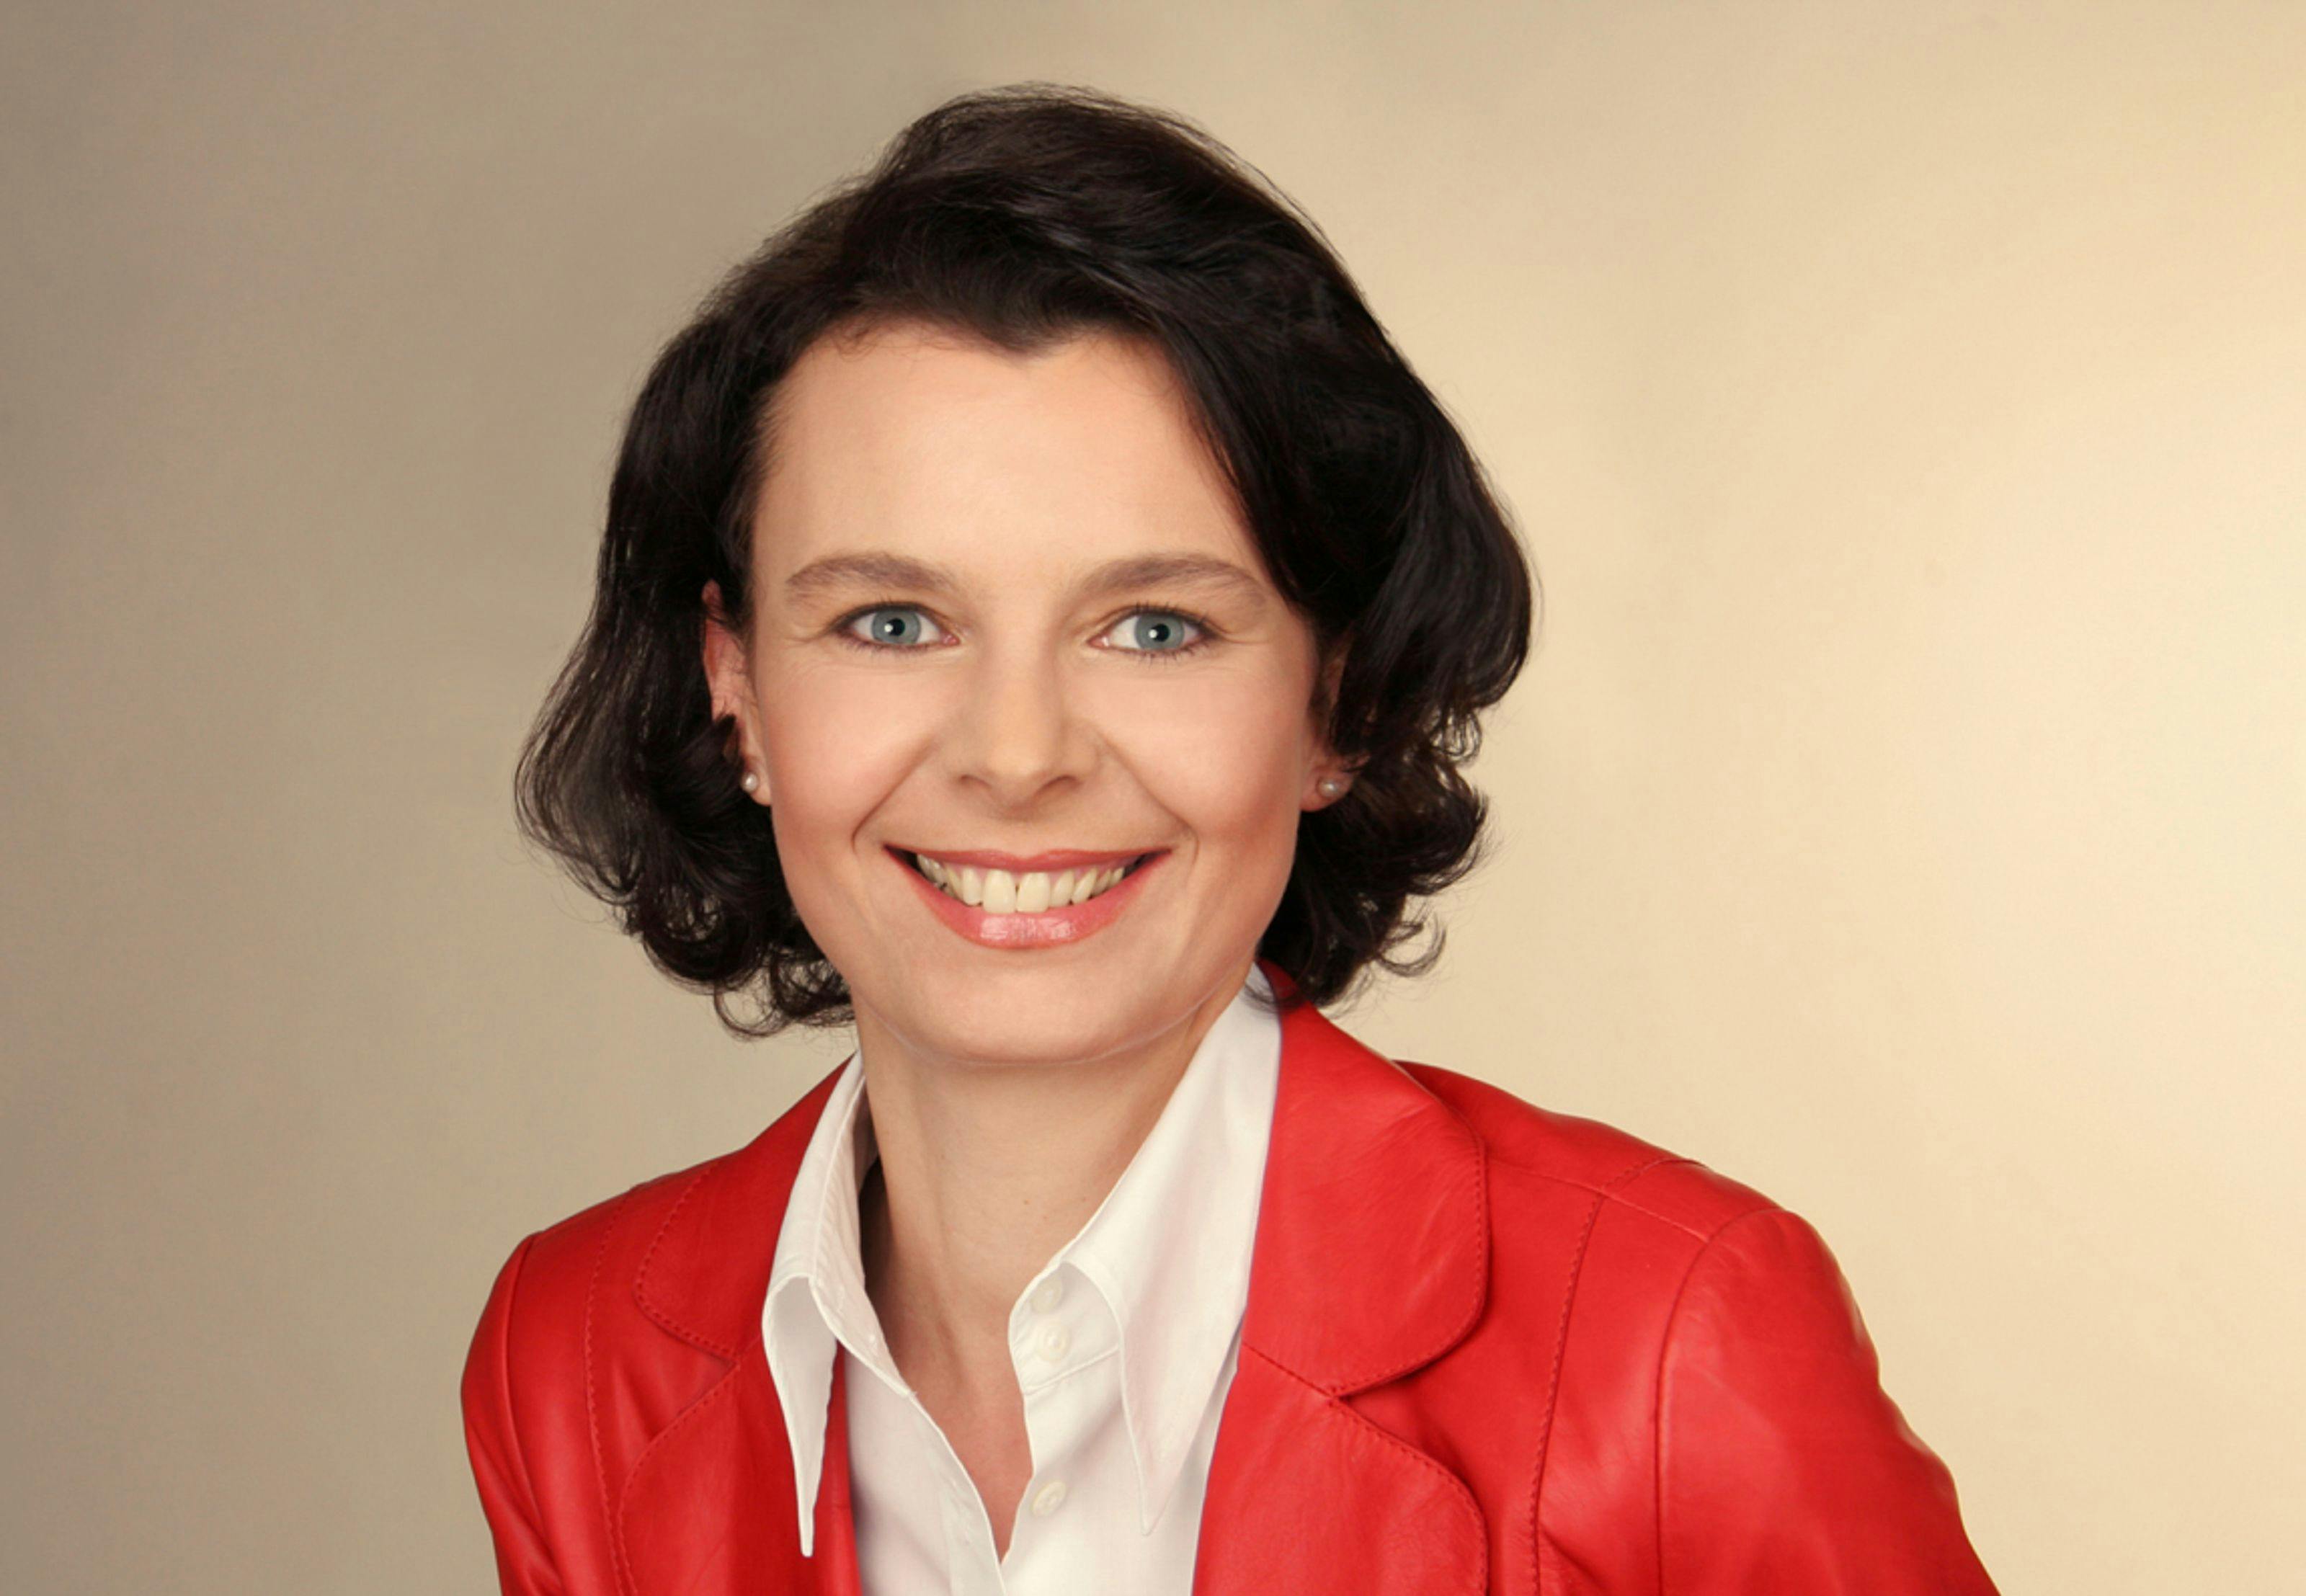 Manuela Höhne wird kommissarische Direktorin Kommunikation von Bugatti